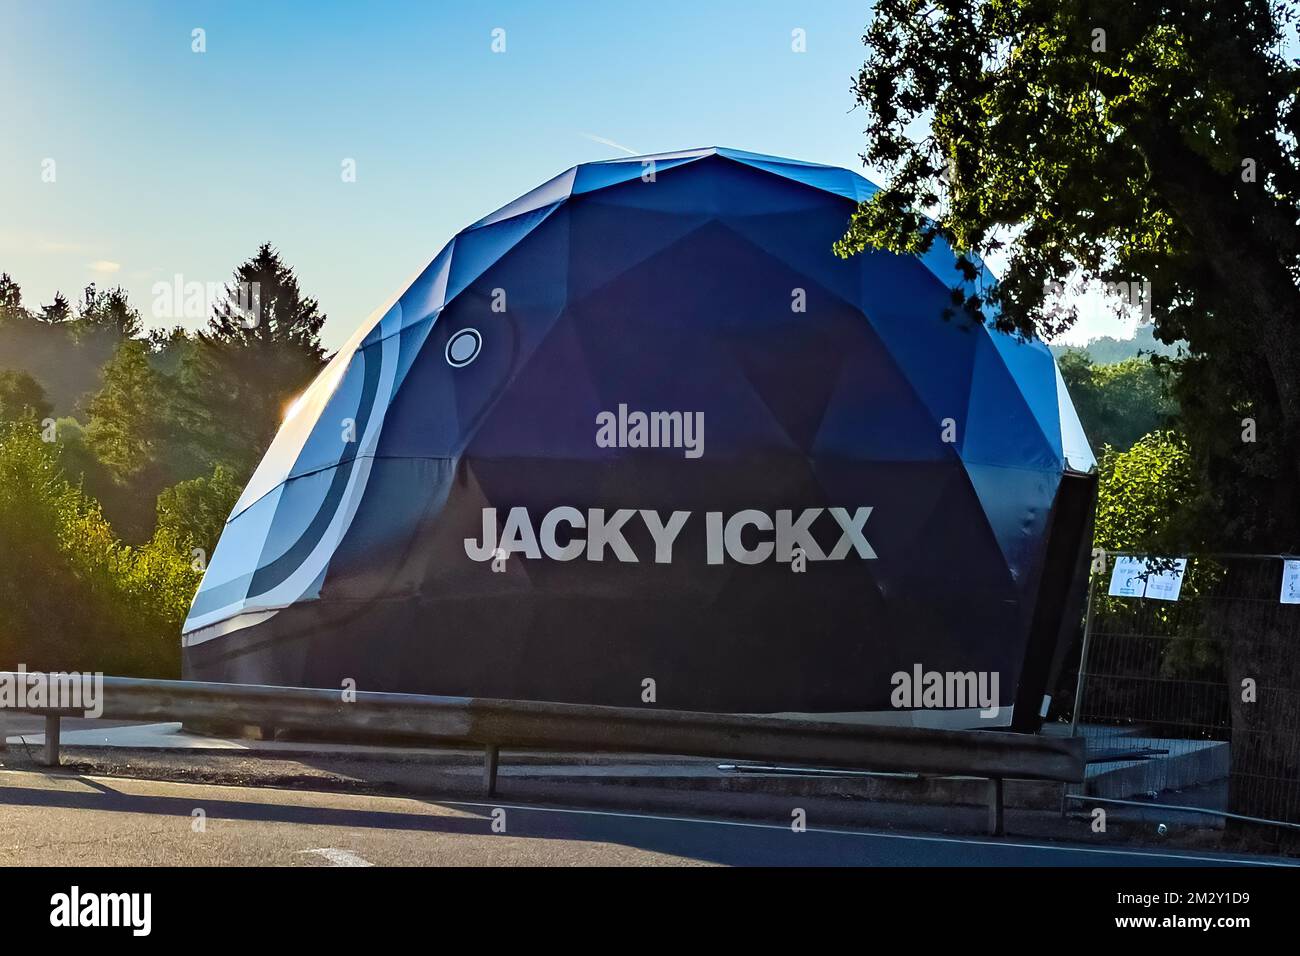 Open Air Museum spazio espositivo con esposizione sulla storia delle corse sotto forma di casco gigante con il nome del pilota di corse Jacky Ickx, Circuit Foto Stock